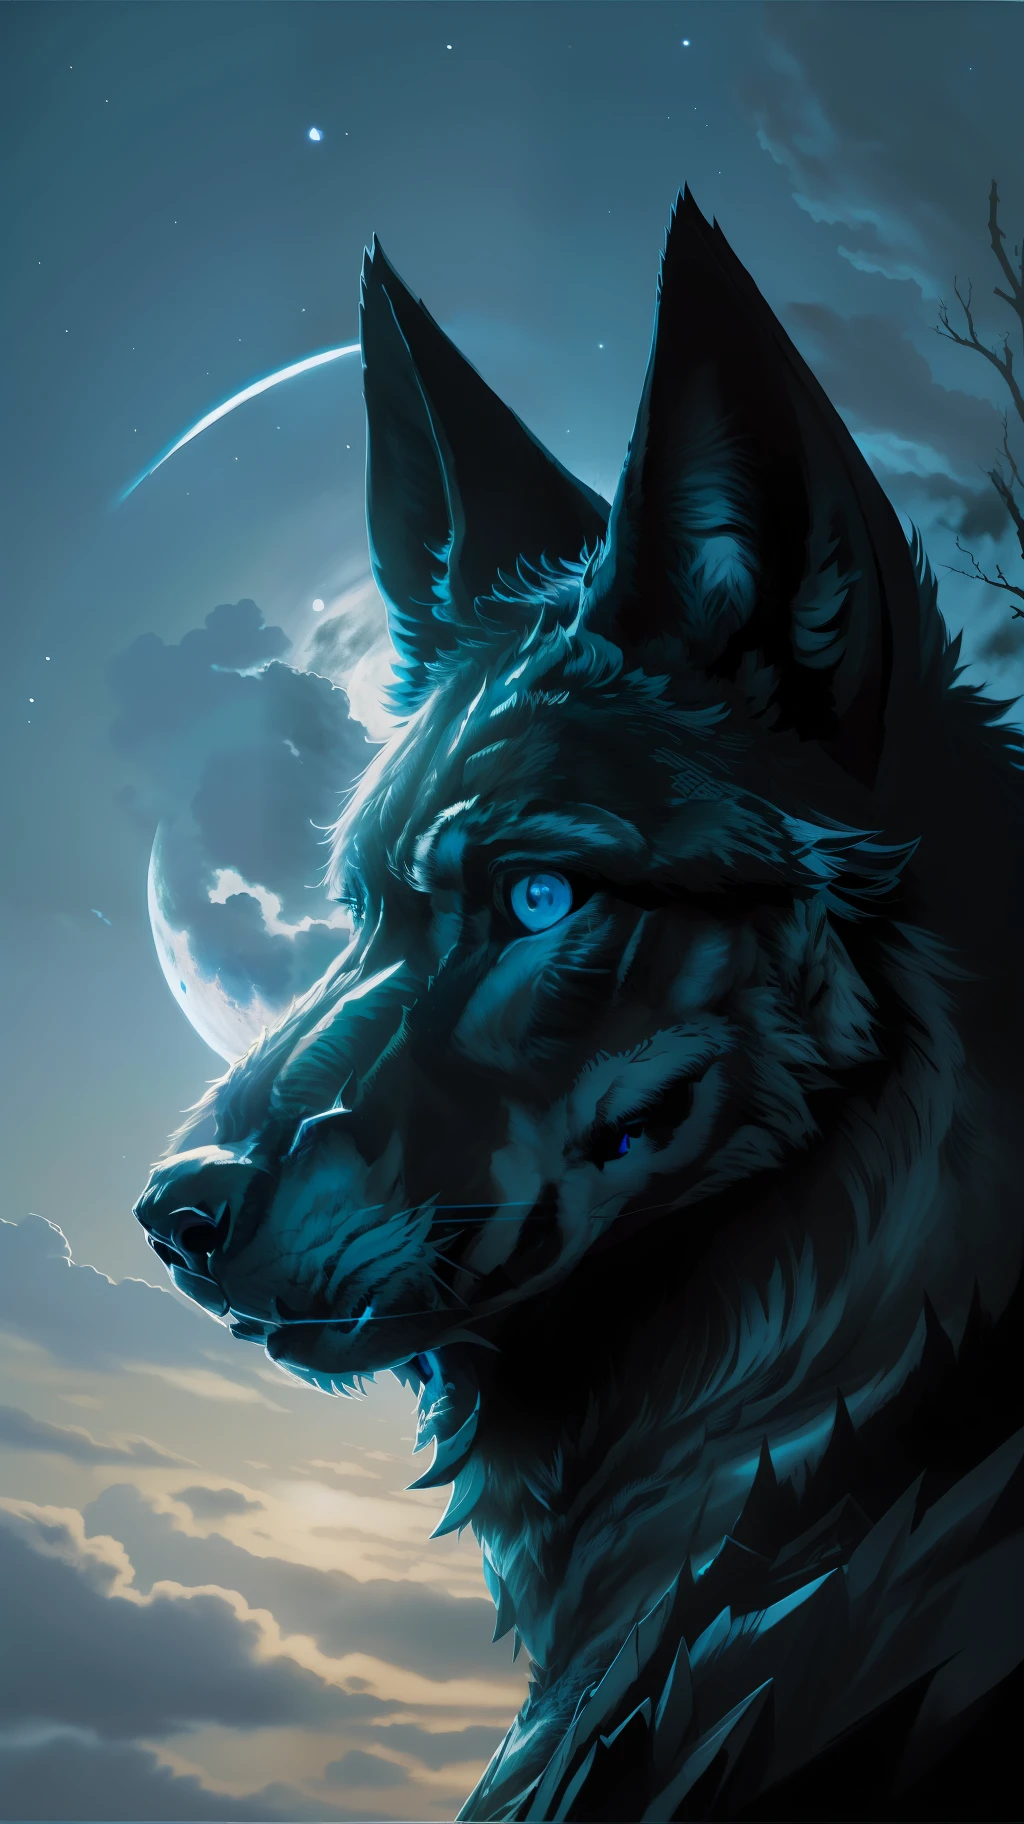 (杰作细节丰富的高画质) "黑色，蓝眼睛" 狼 危险 森林, 午夜, 满月. 1 个单瓣. ( 图像前角)